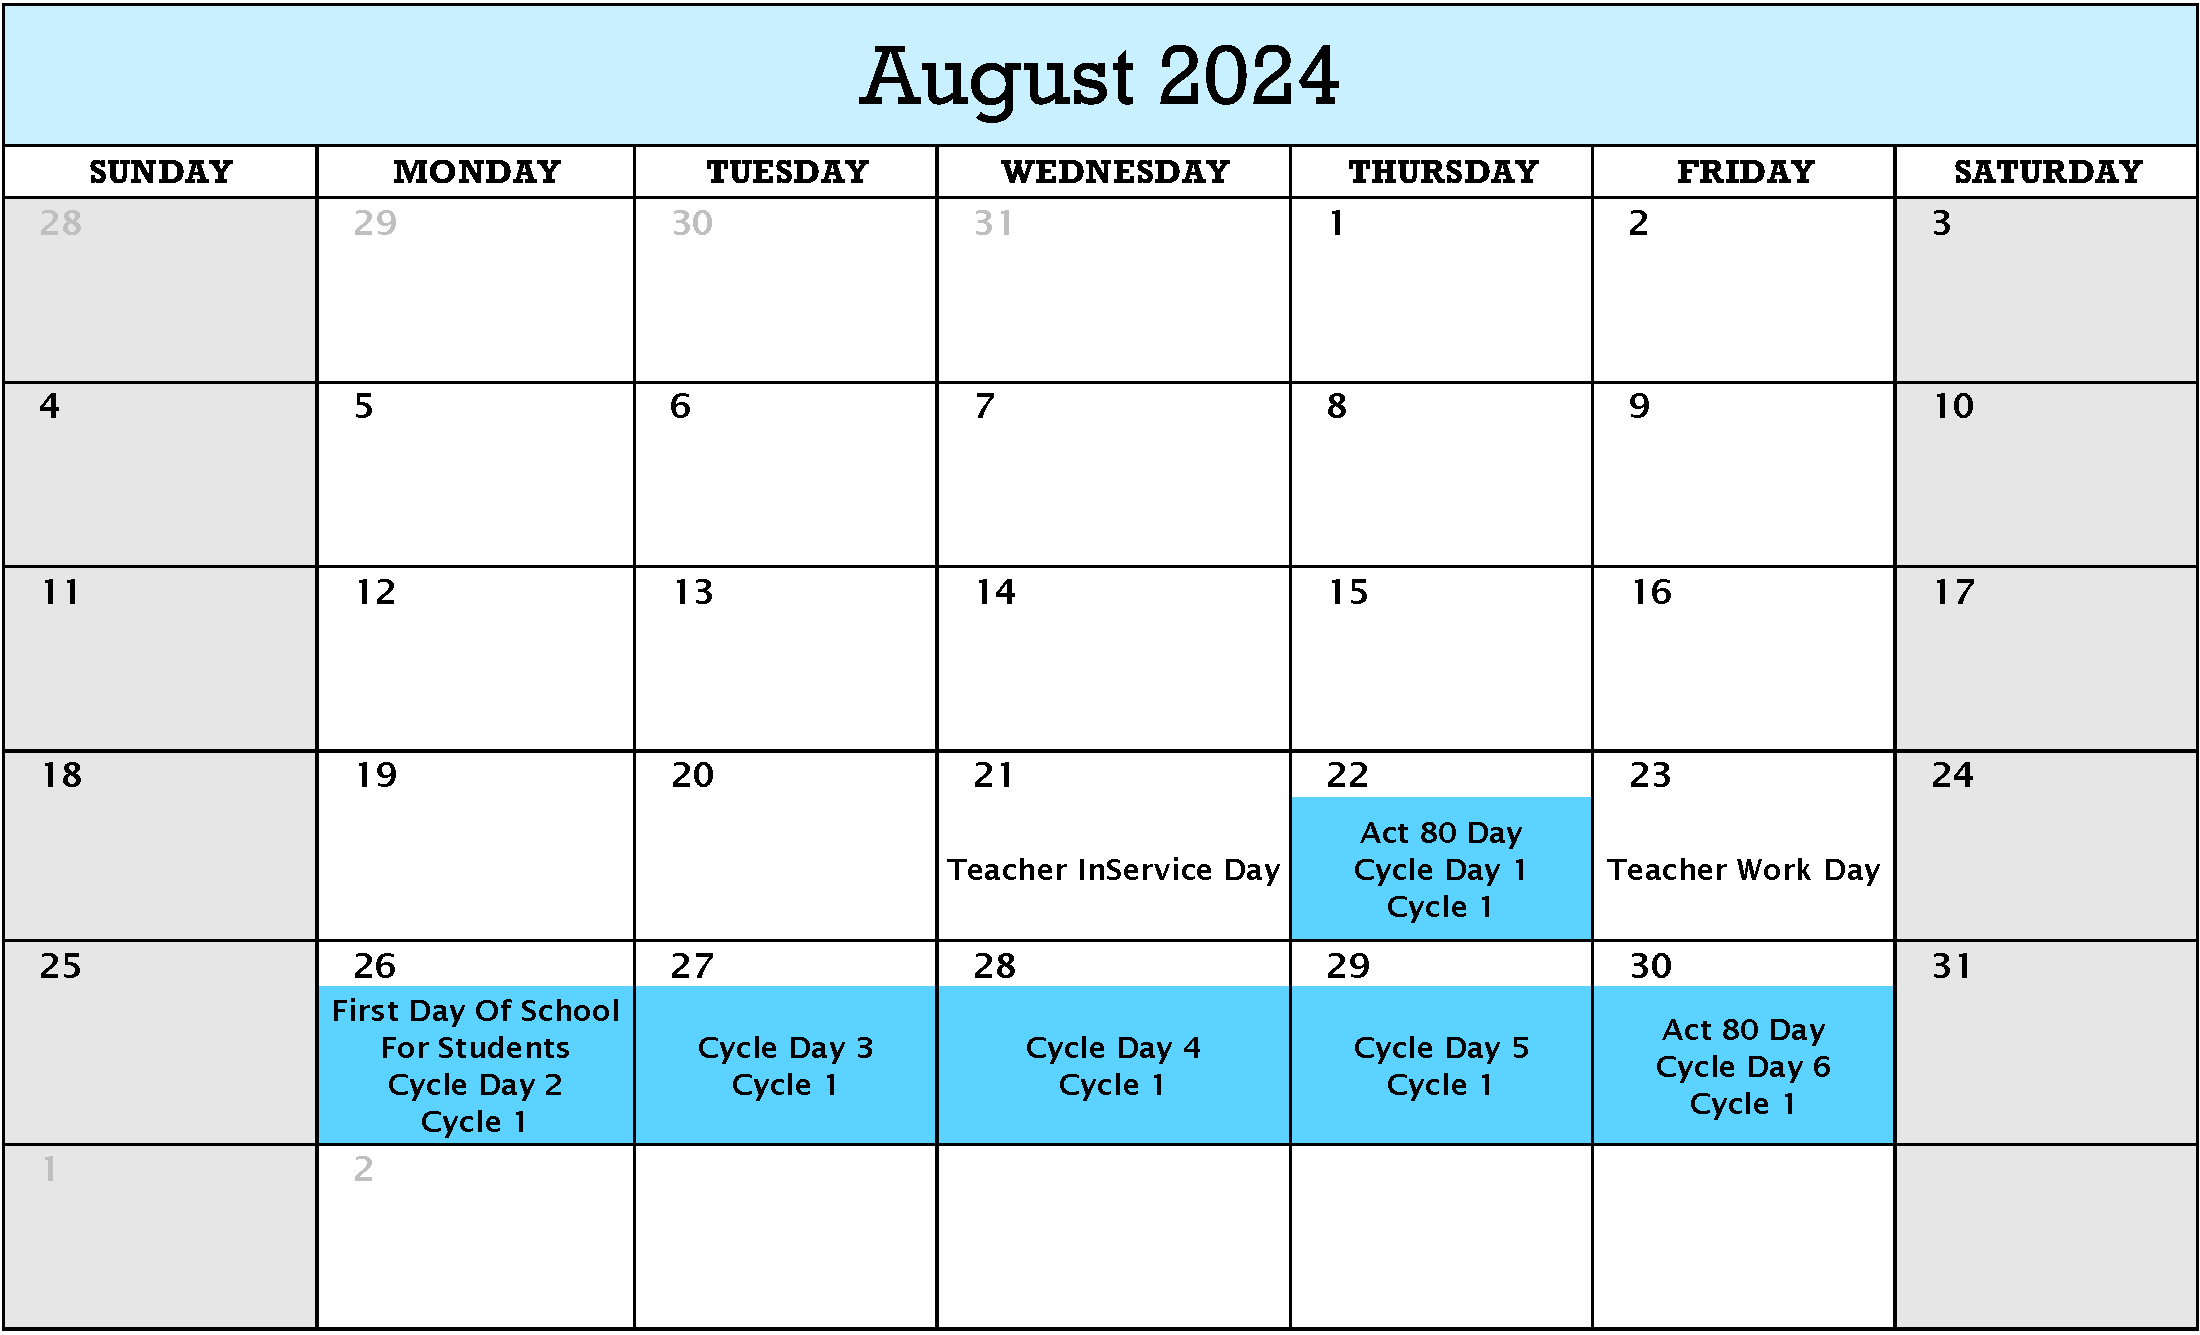 August 2024 Cycle Calendar pdf version below